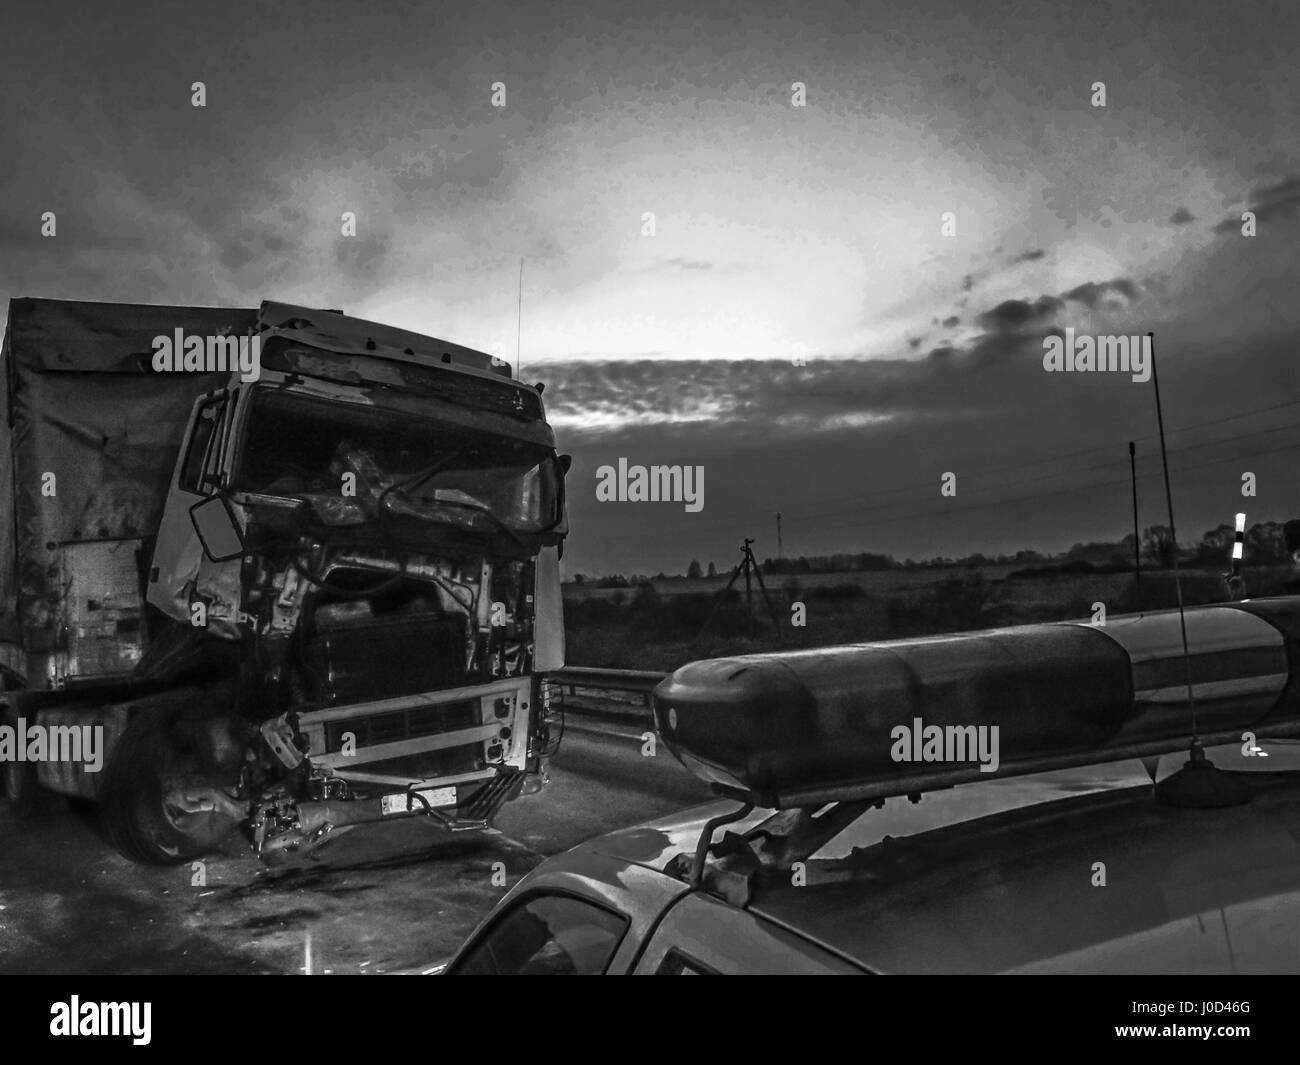 26 mars 2017 - voiture polis en choisissant un camion blessé lors d'un accident Crédit : Igor Golovniov/ZUMA/Alamy Fil Live News Banque D'Images